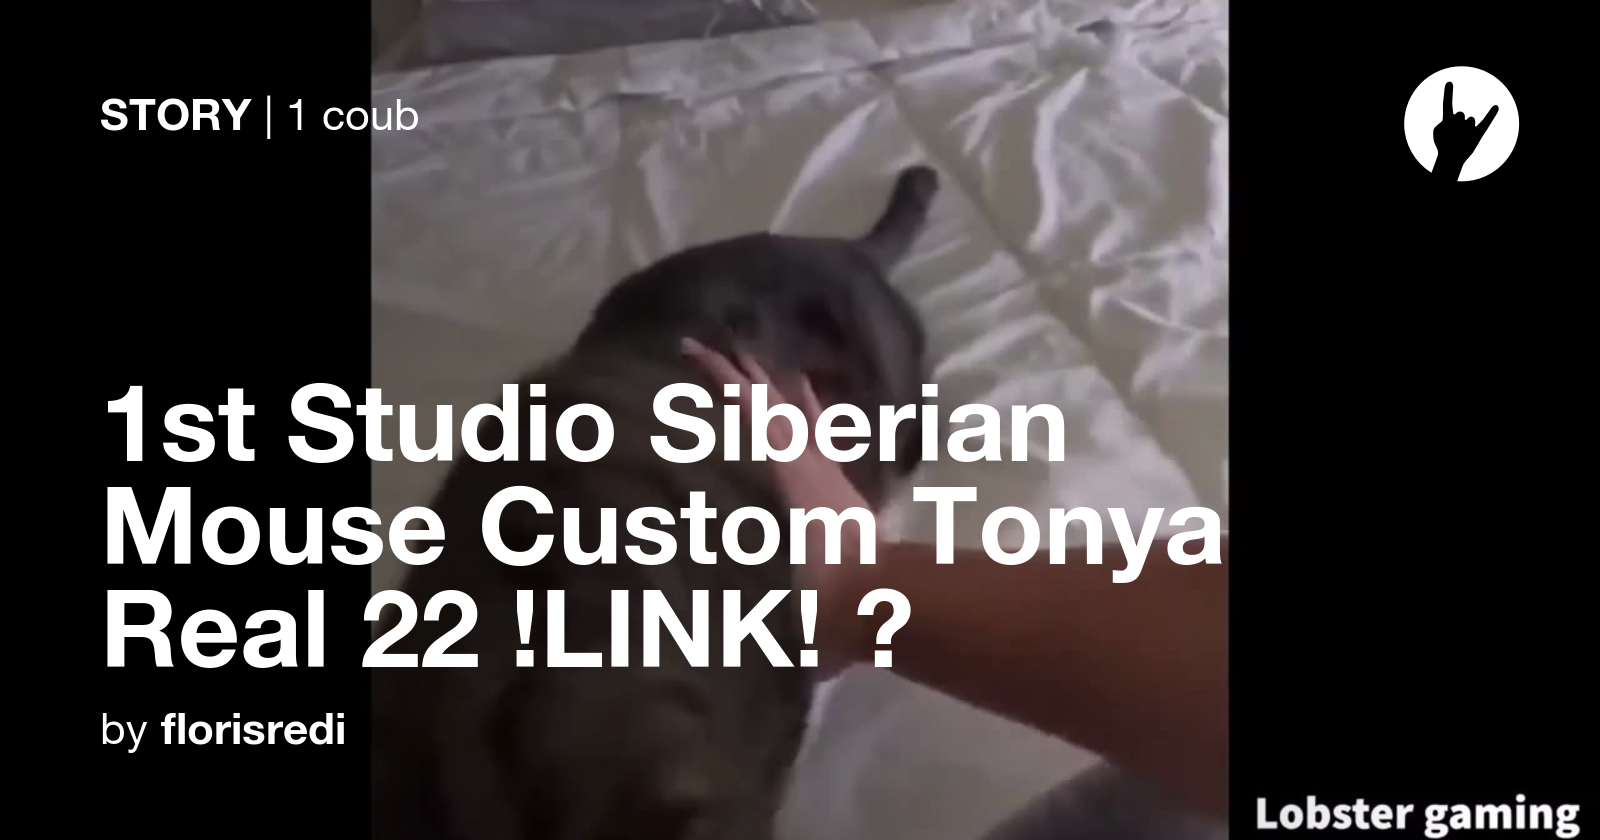 1St Studio Siberian Mouse Custom Nk 006